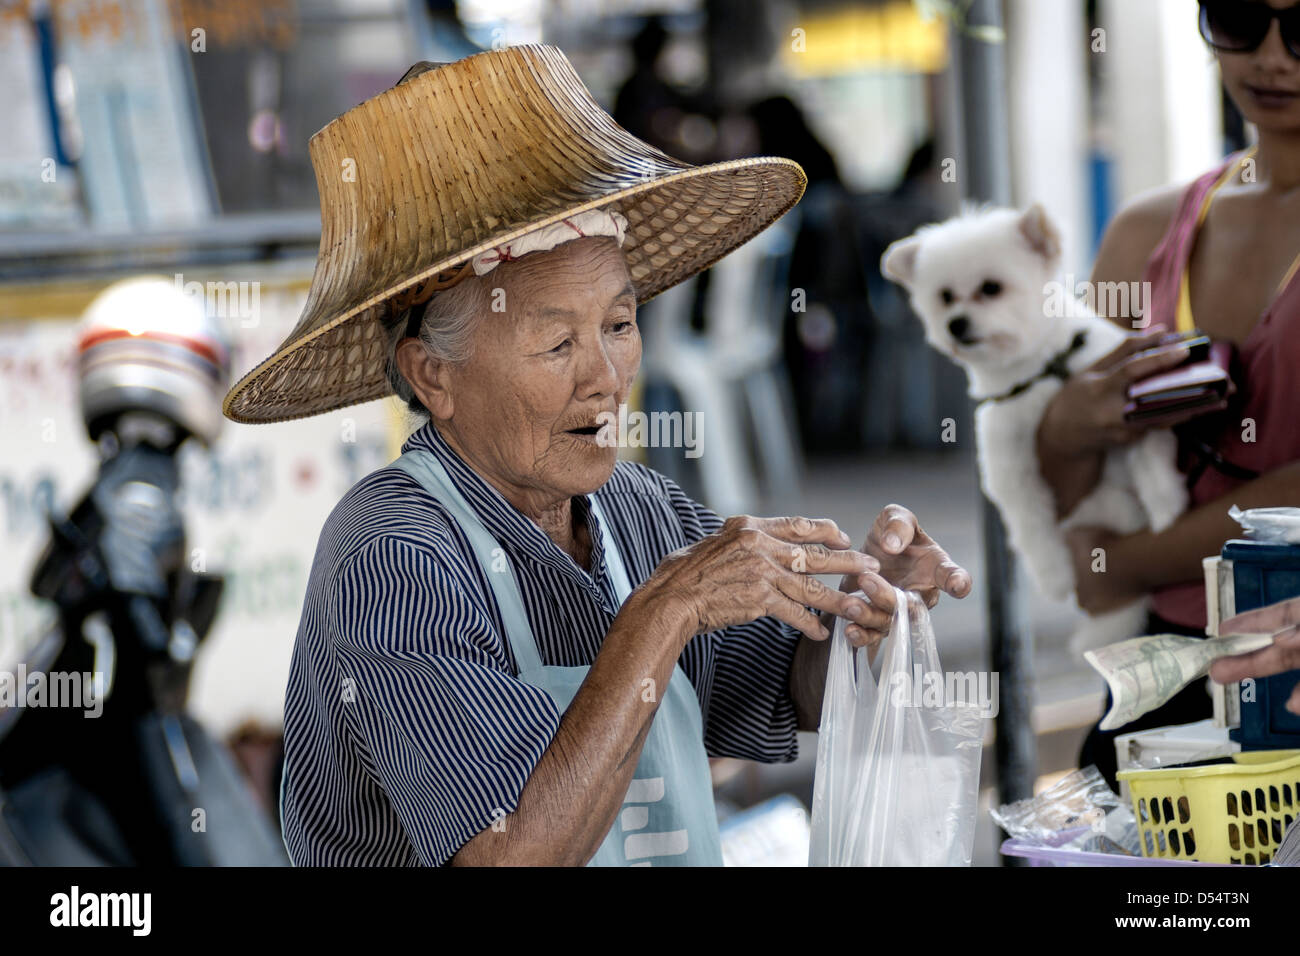 Femme âgée street food vendor, heureux et souriant à son travail. La Thaïlande Asie du sud-est Banque D'Images